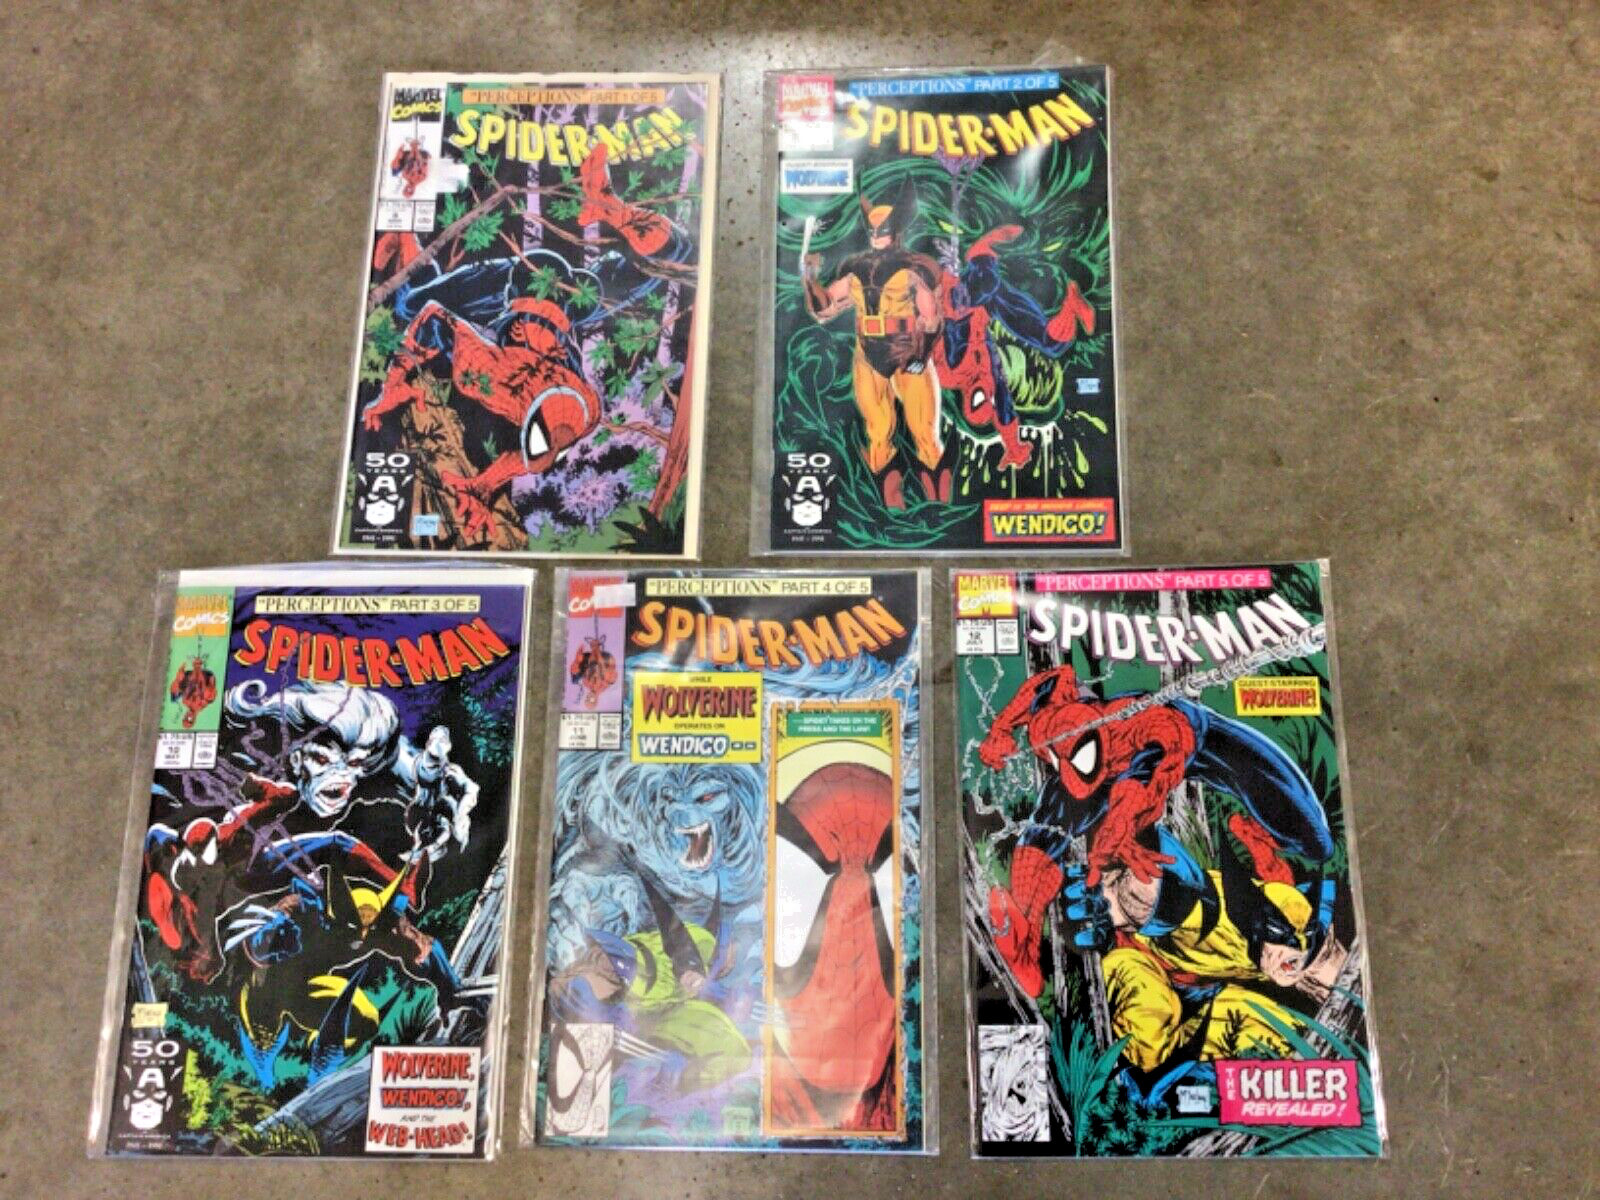 Marvel Comics Perceptions Series Spider-Man parts 1-5 complete set 8 9 10 11 12